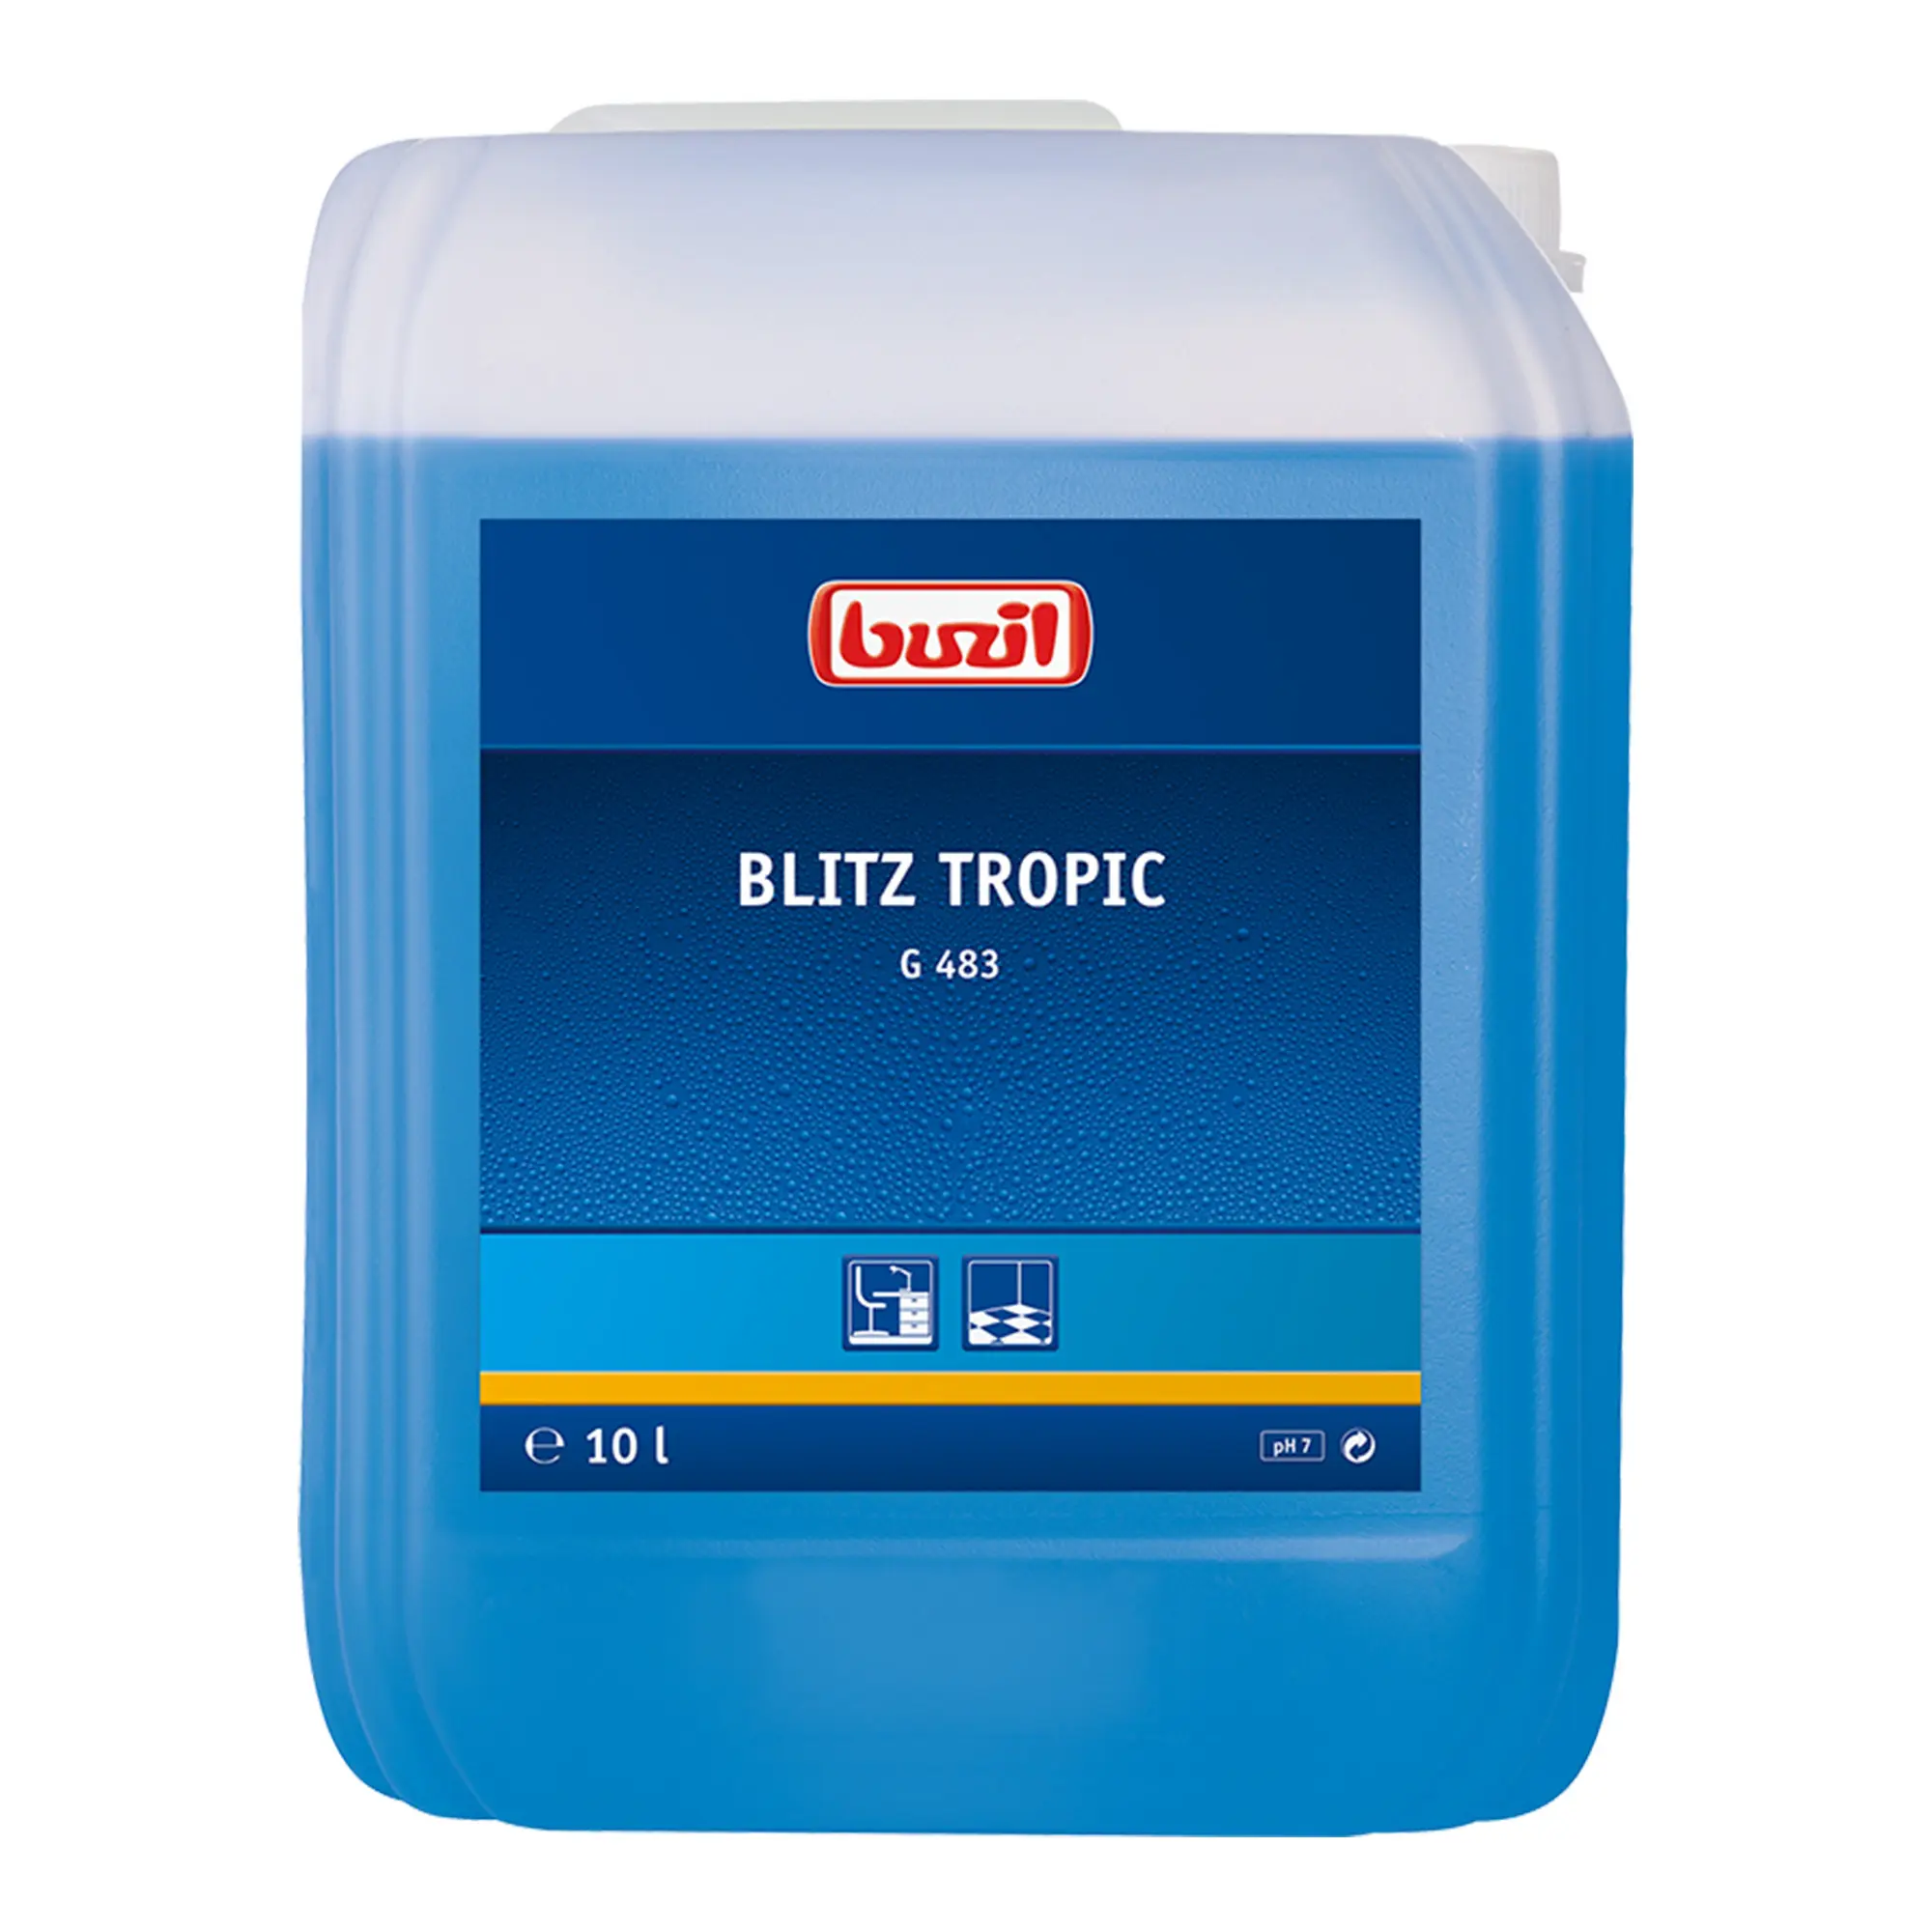 Buzil Blitz Tropic G483 neutraler Allesreiniger 10 Liter Kanister G483-0010RA_1